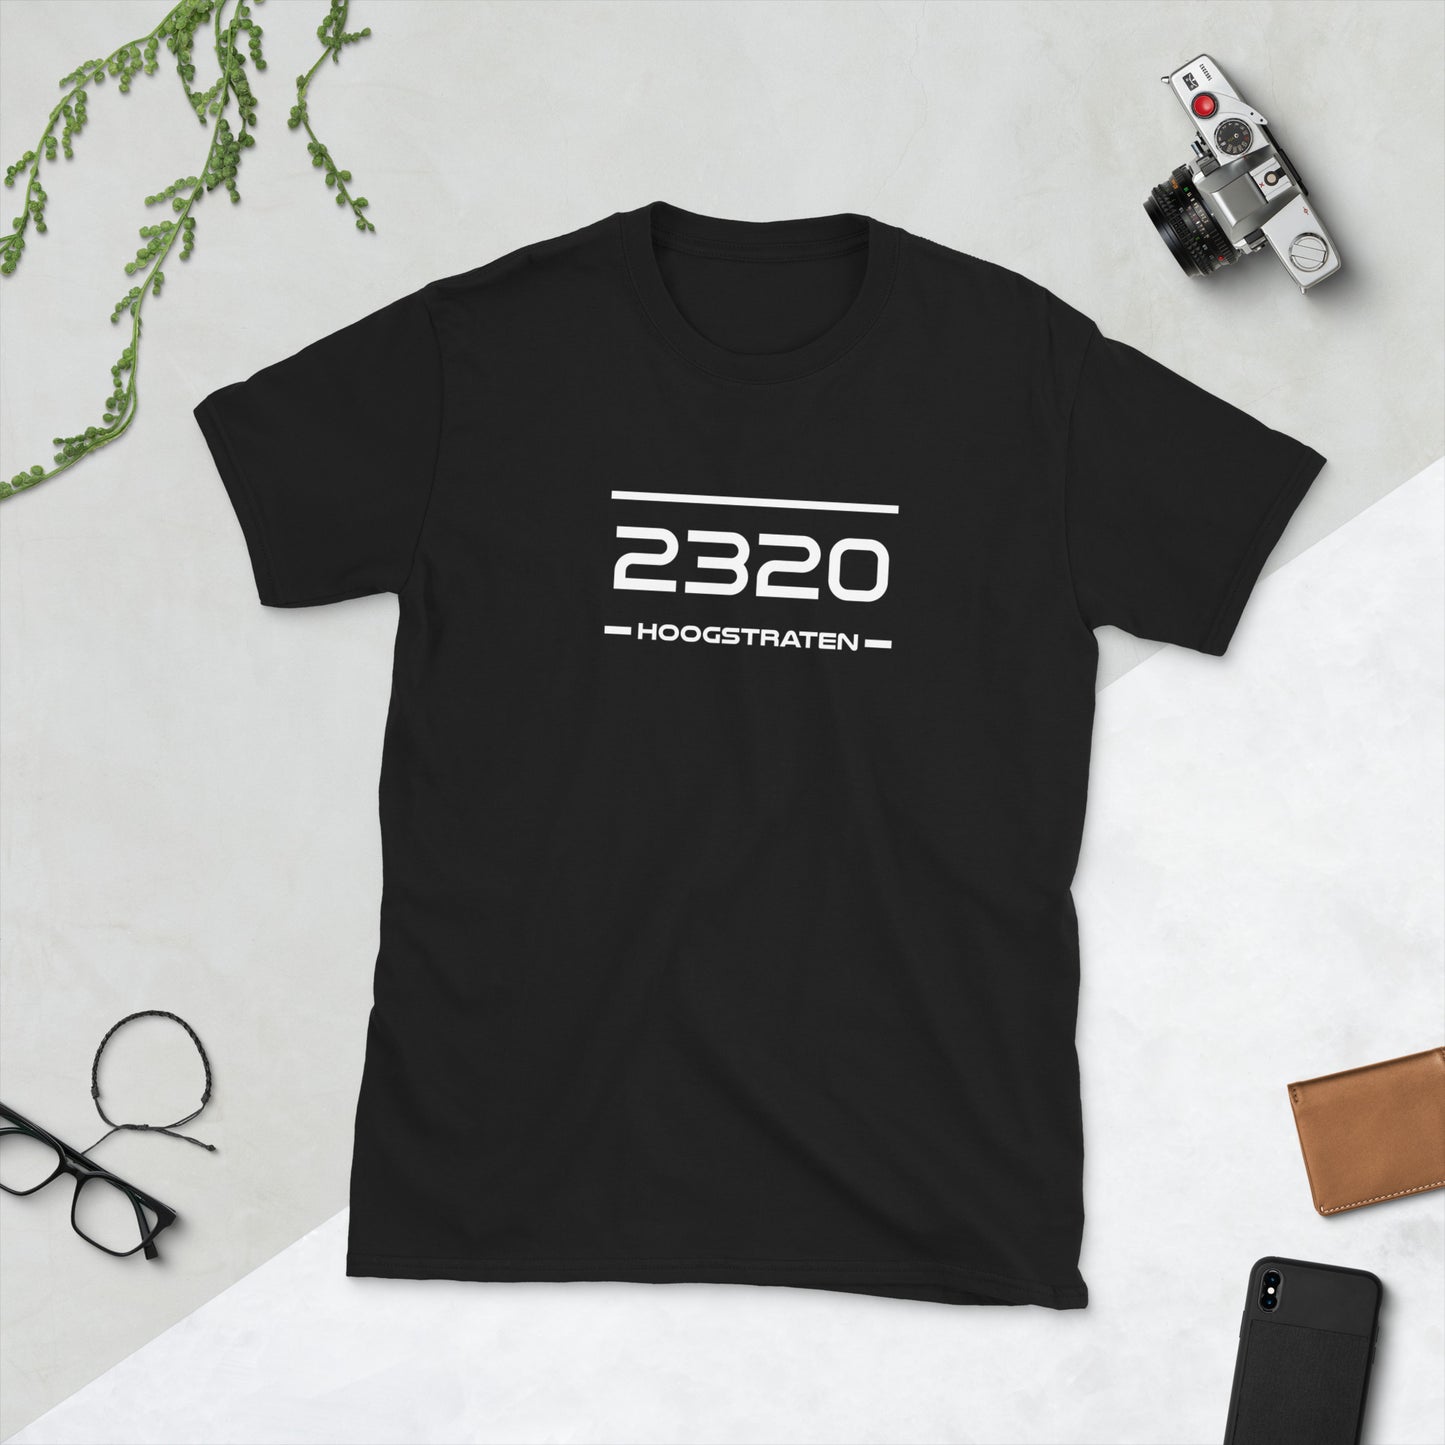 Tshirt - 2320 - Hoogstraten